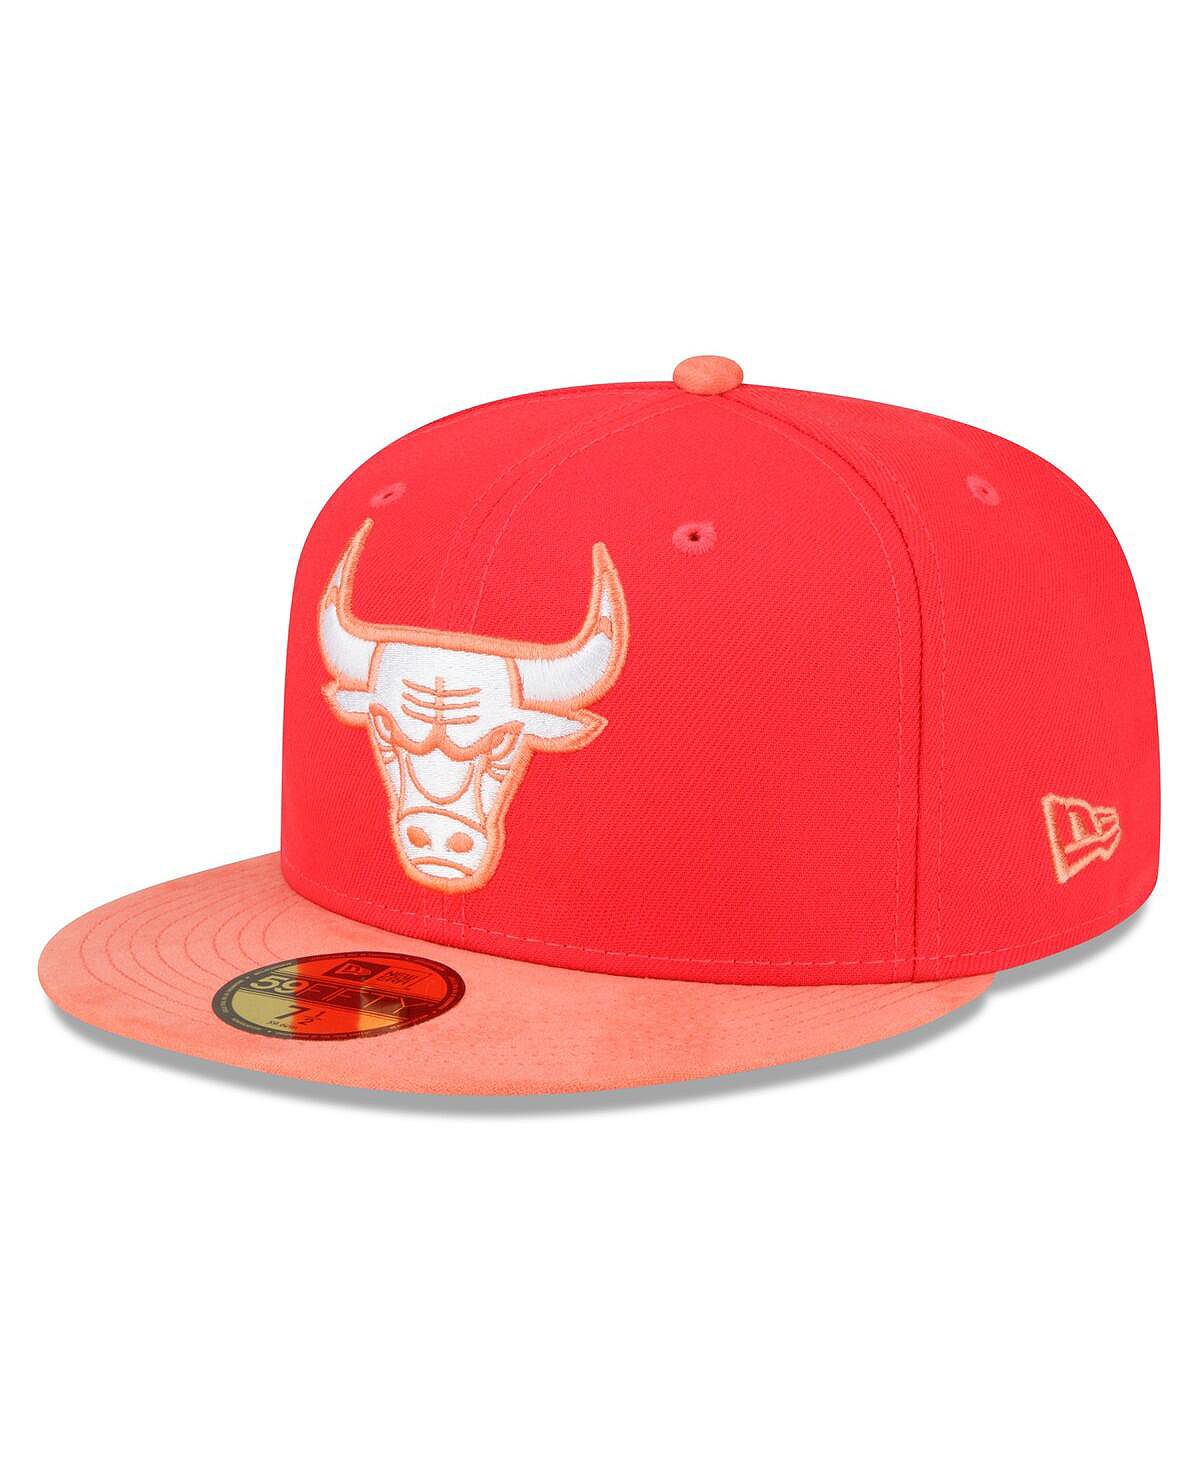 Мужская шляпа в тон 59FIFTY красного, персикового цвета Chicago Bulls New Era